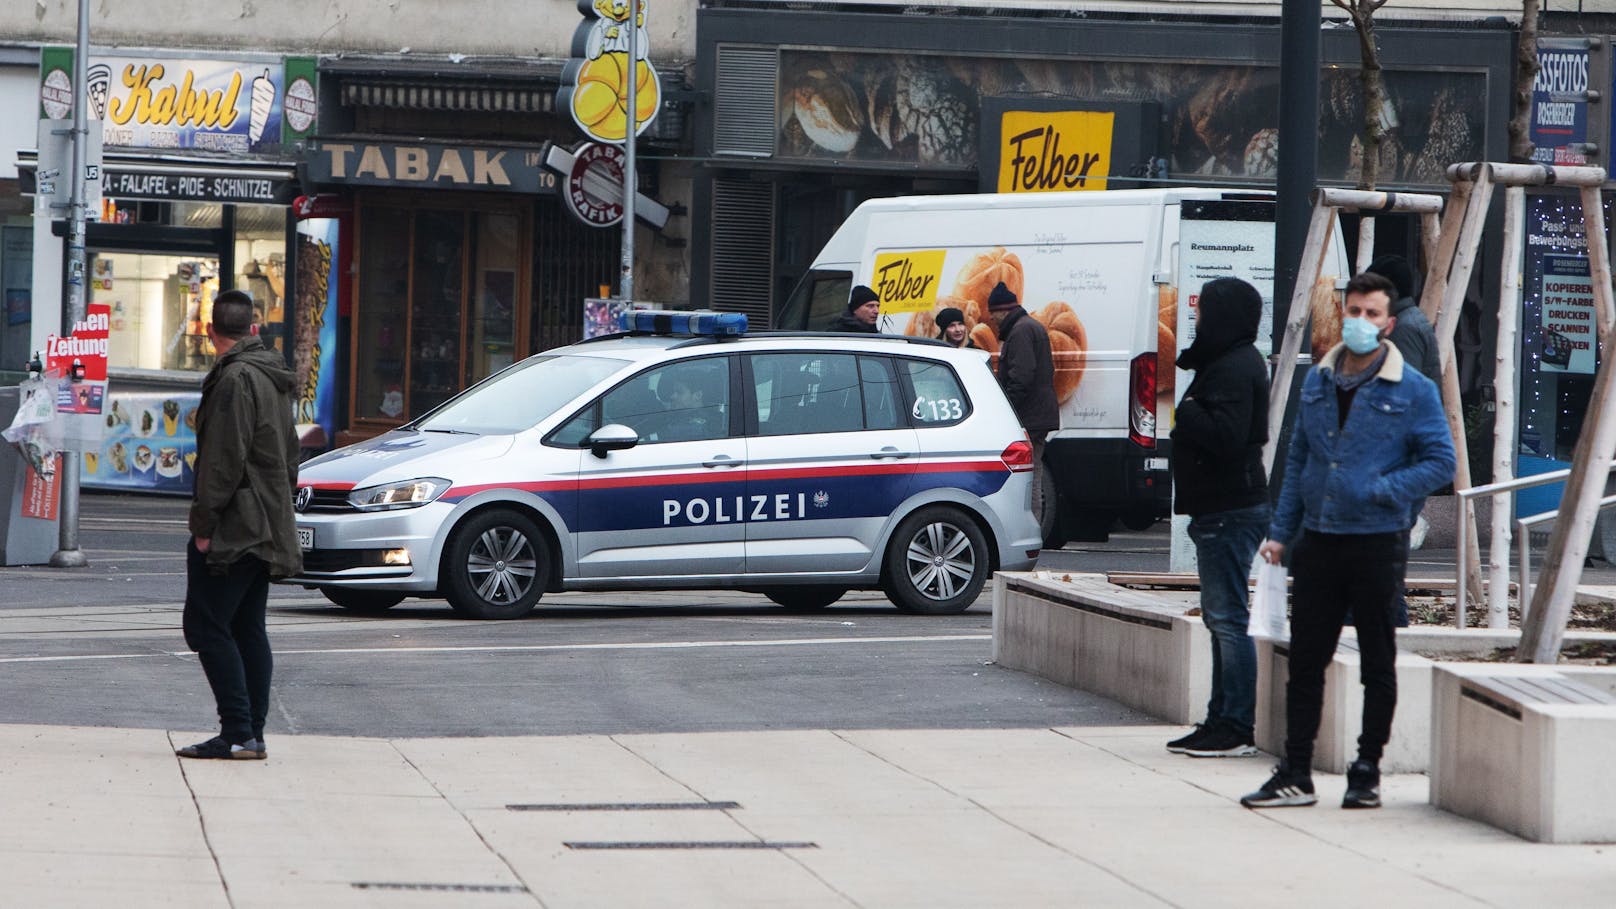 Wiener hört Geräusche in Wohnung und ruft die Polizei